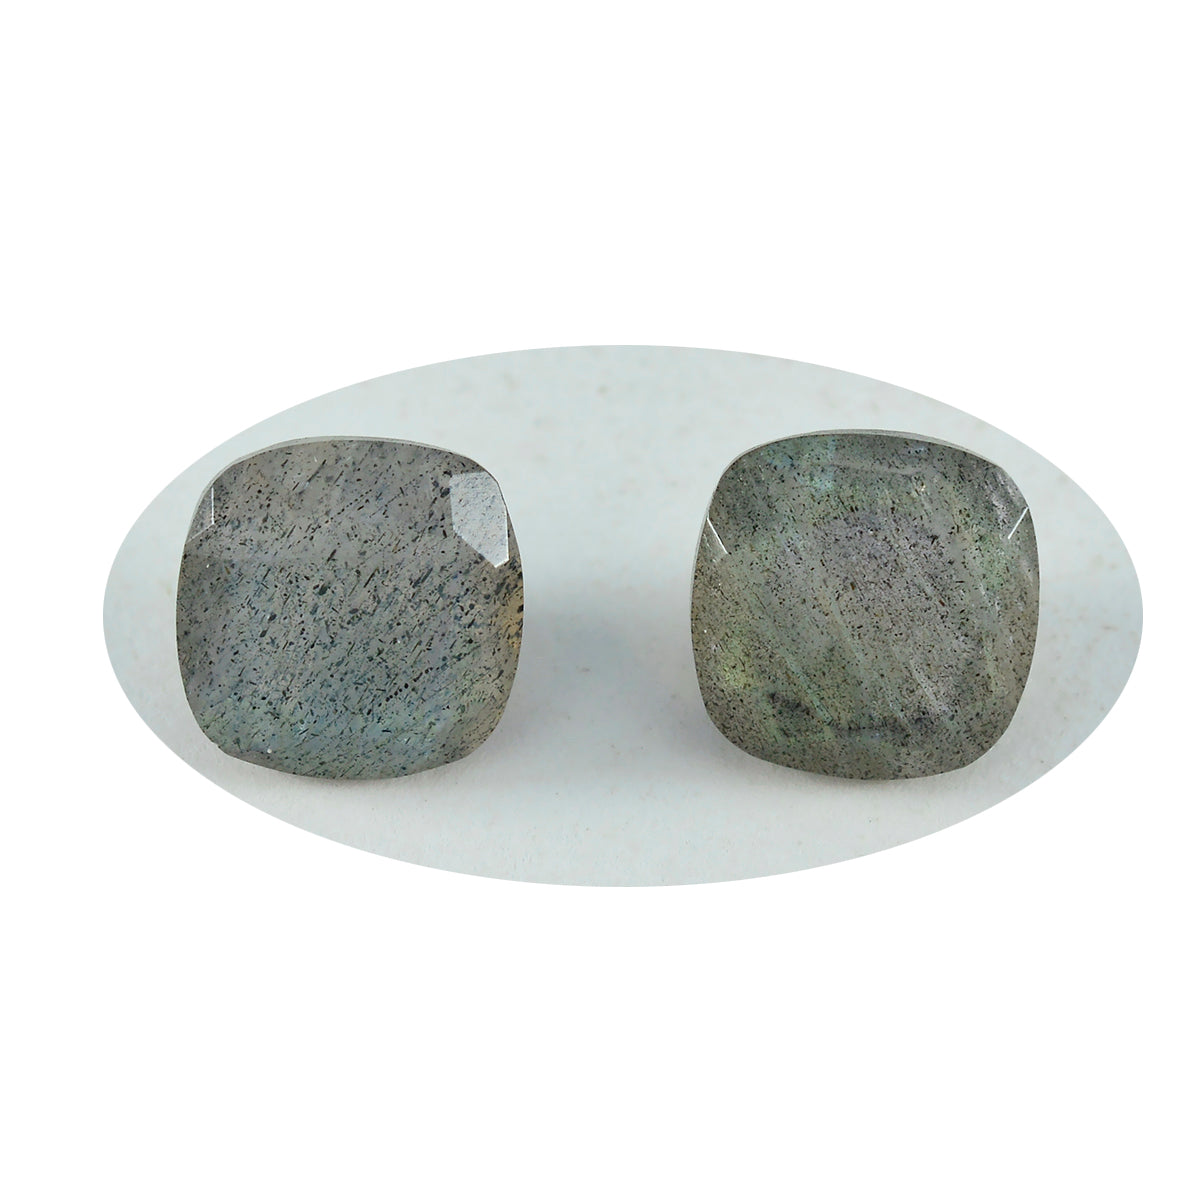 riyogems 1 шт., настоящий серый лабрадорит, ограненный, 15x15 мм, в форме подушки, красивое качество, свободные драгоценные камни